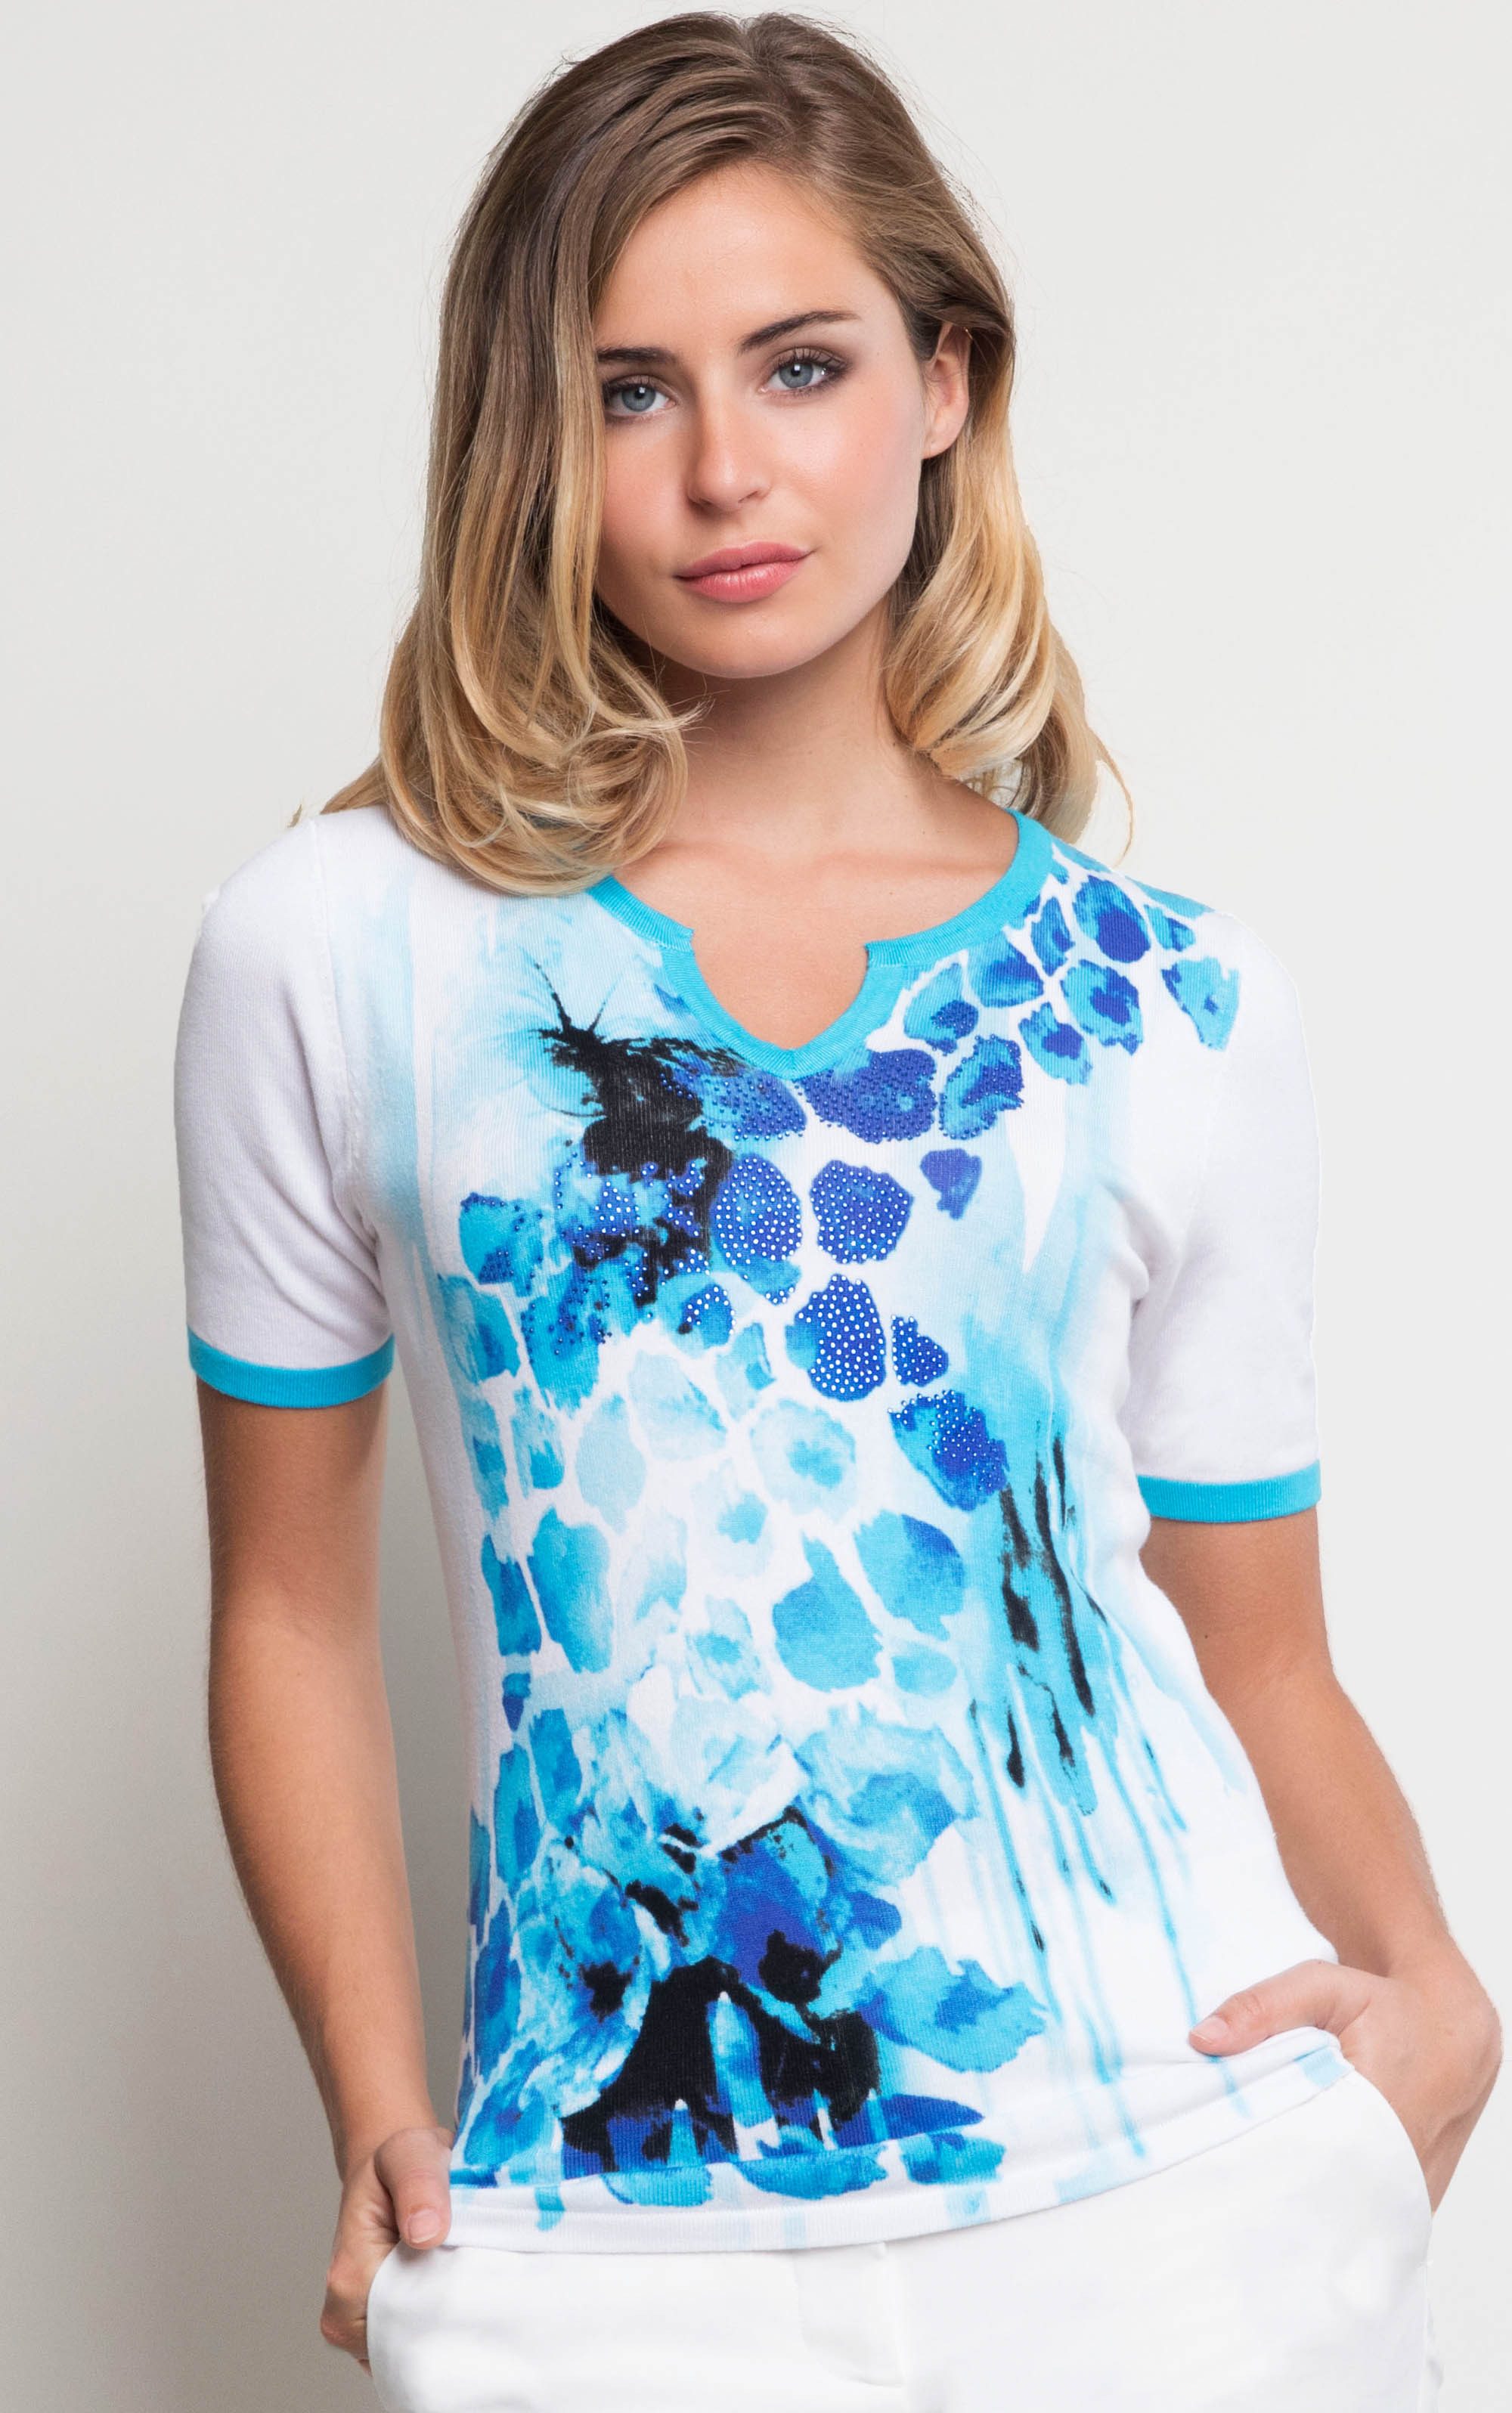 Passioni T-Shirt Weies T-Shirt mit Blauem Floralprint mit Glitzersteinen-passioni 1